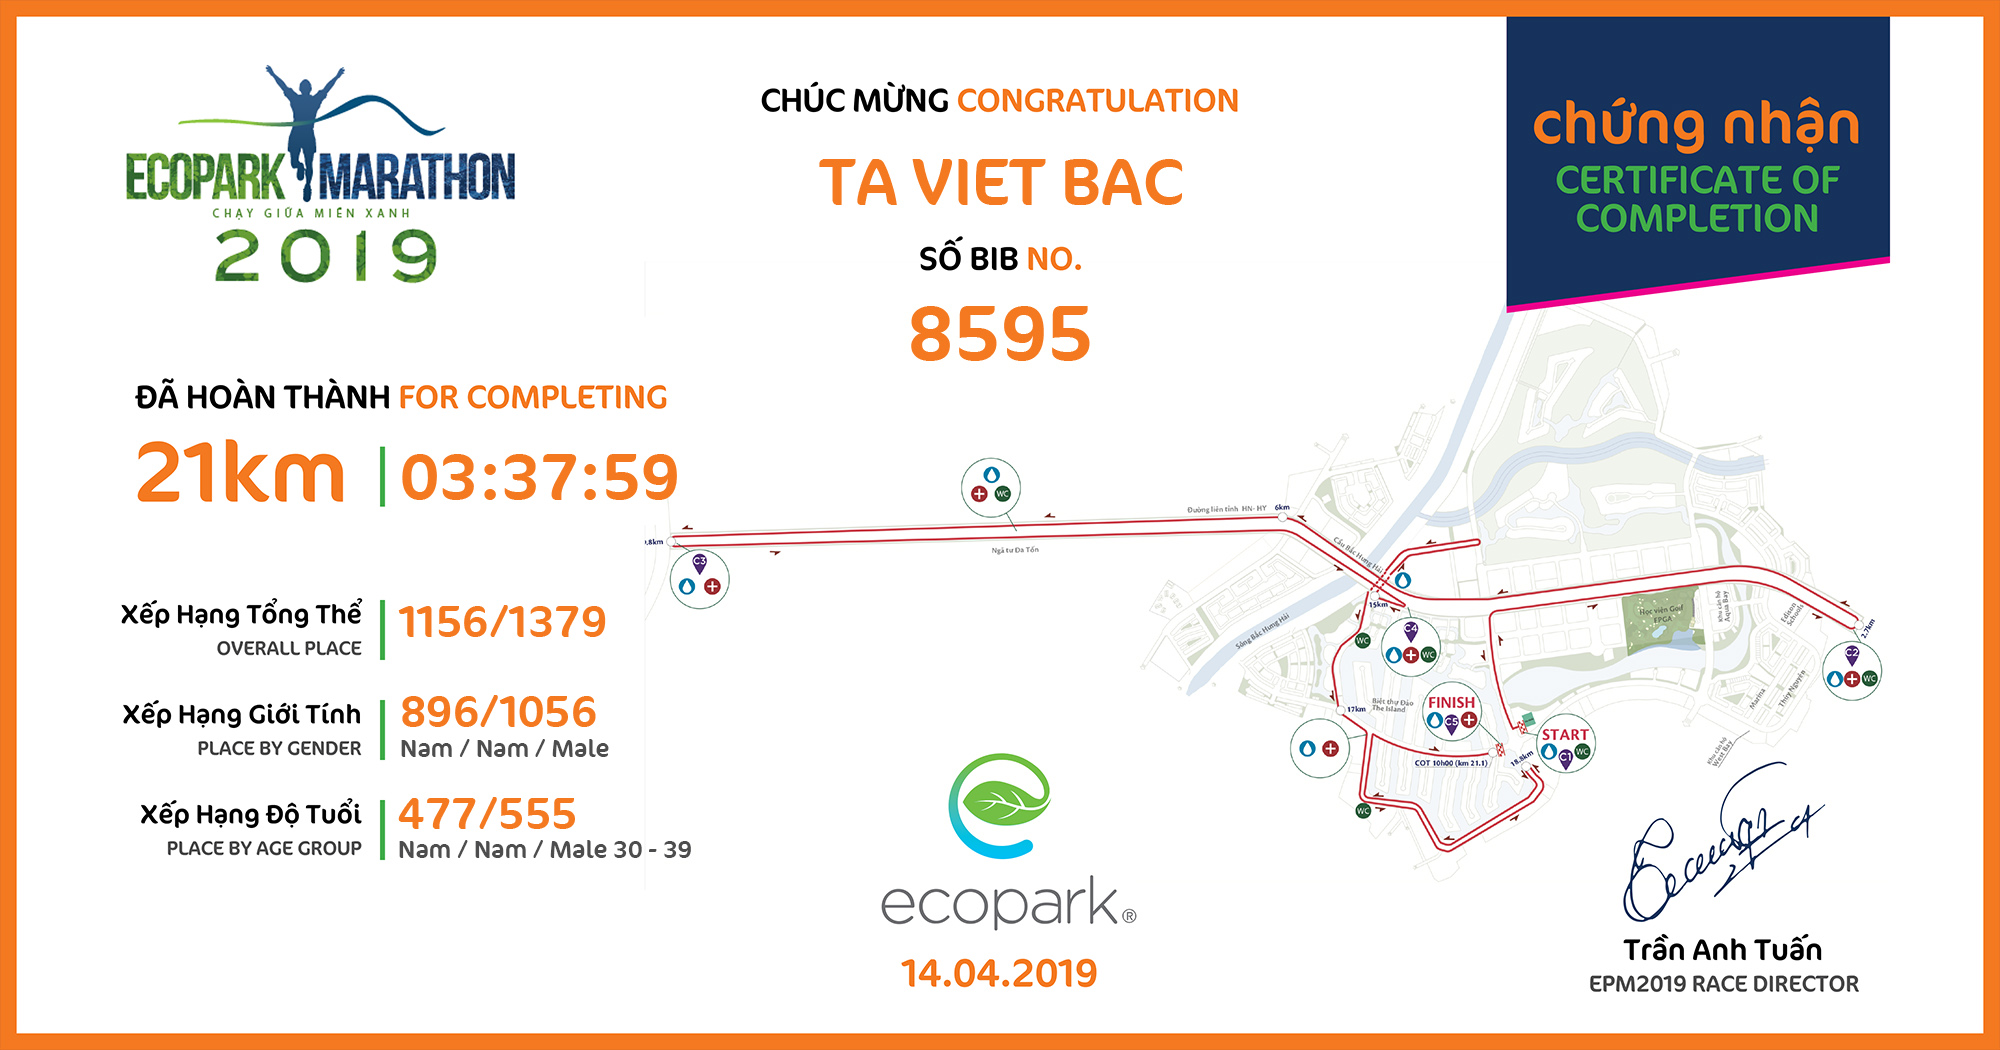 8595 - Ta Viet Bac